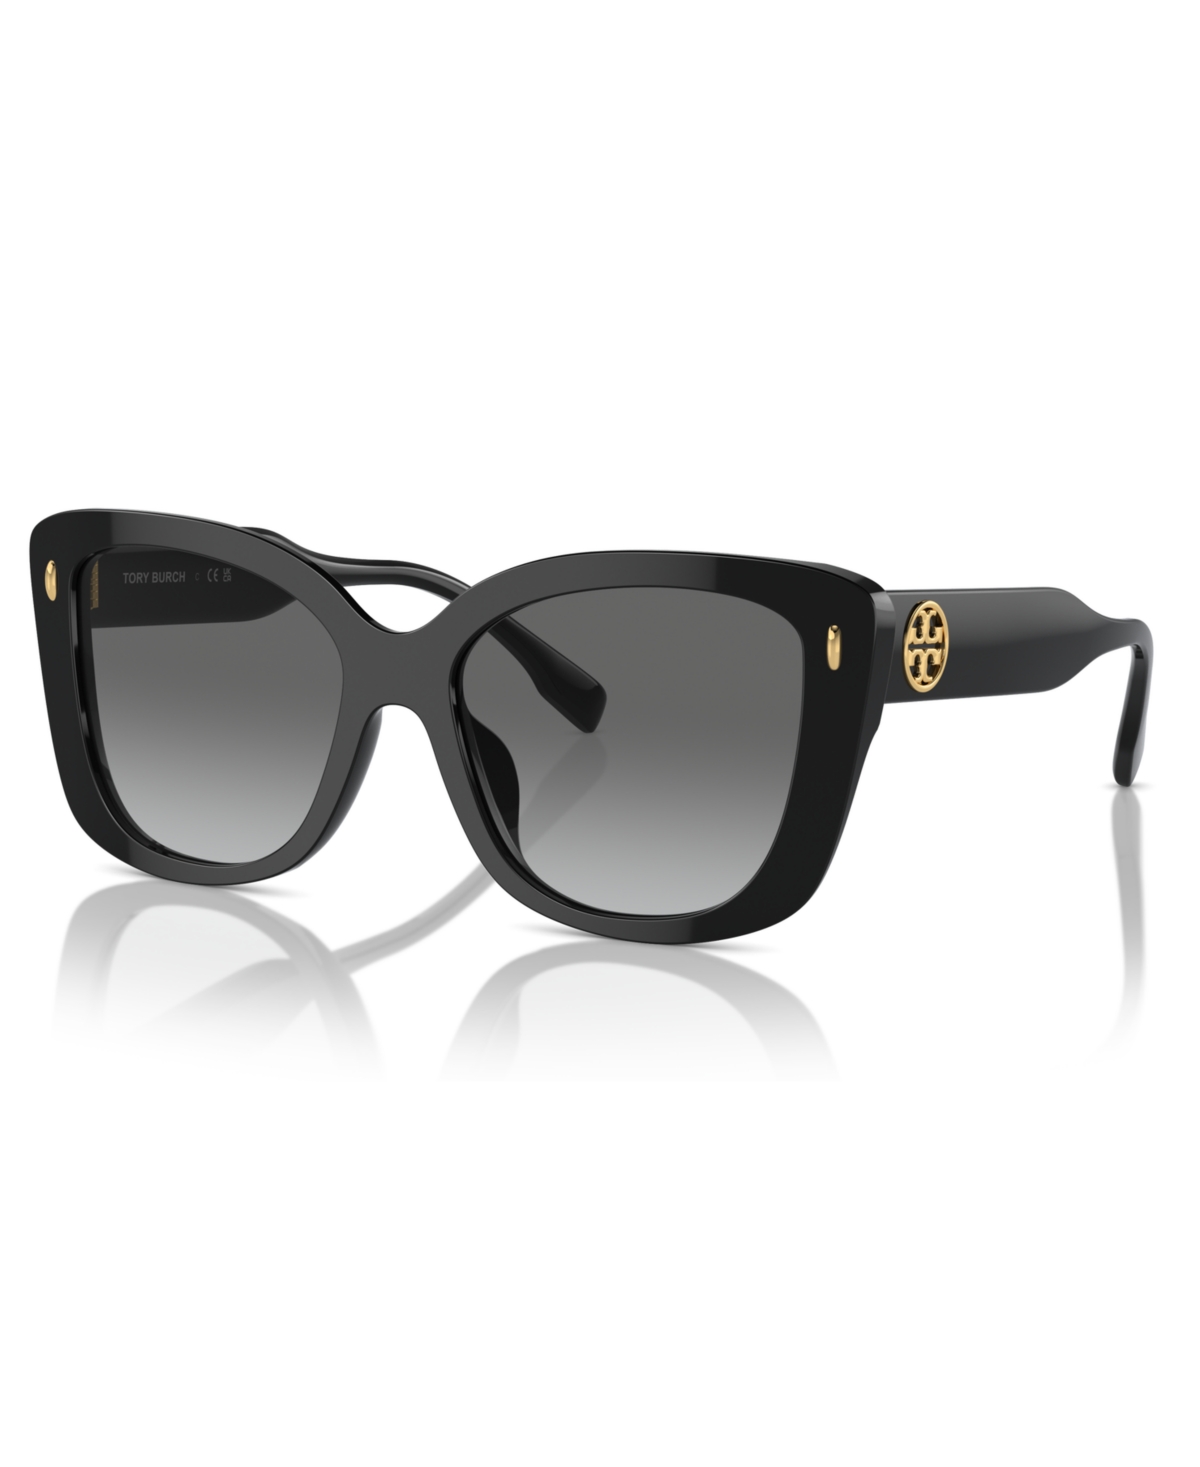 Women's Sunglasses, Ty7198U - Dark Brown